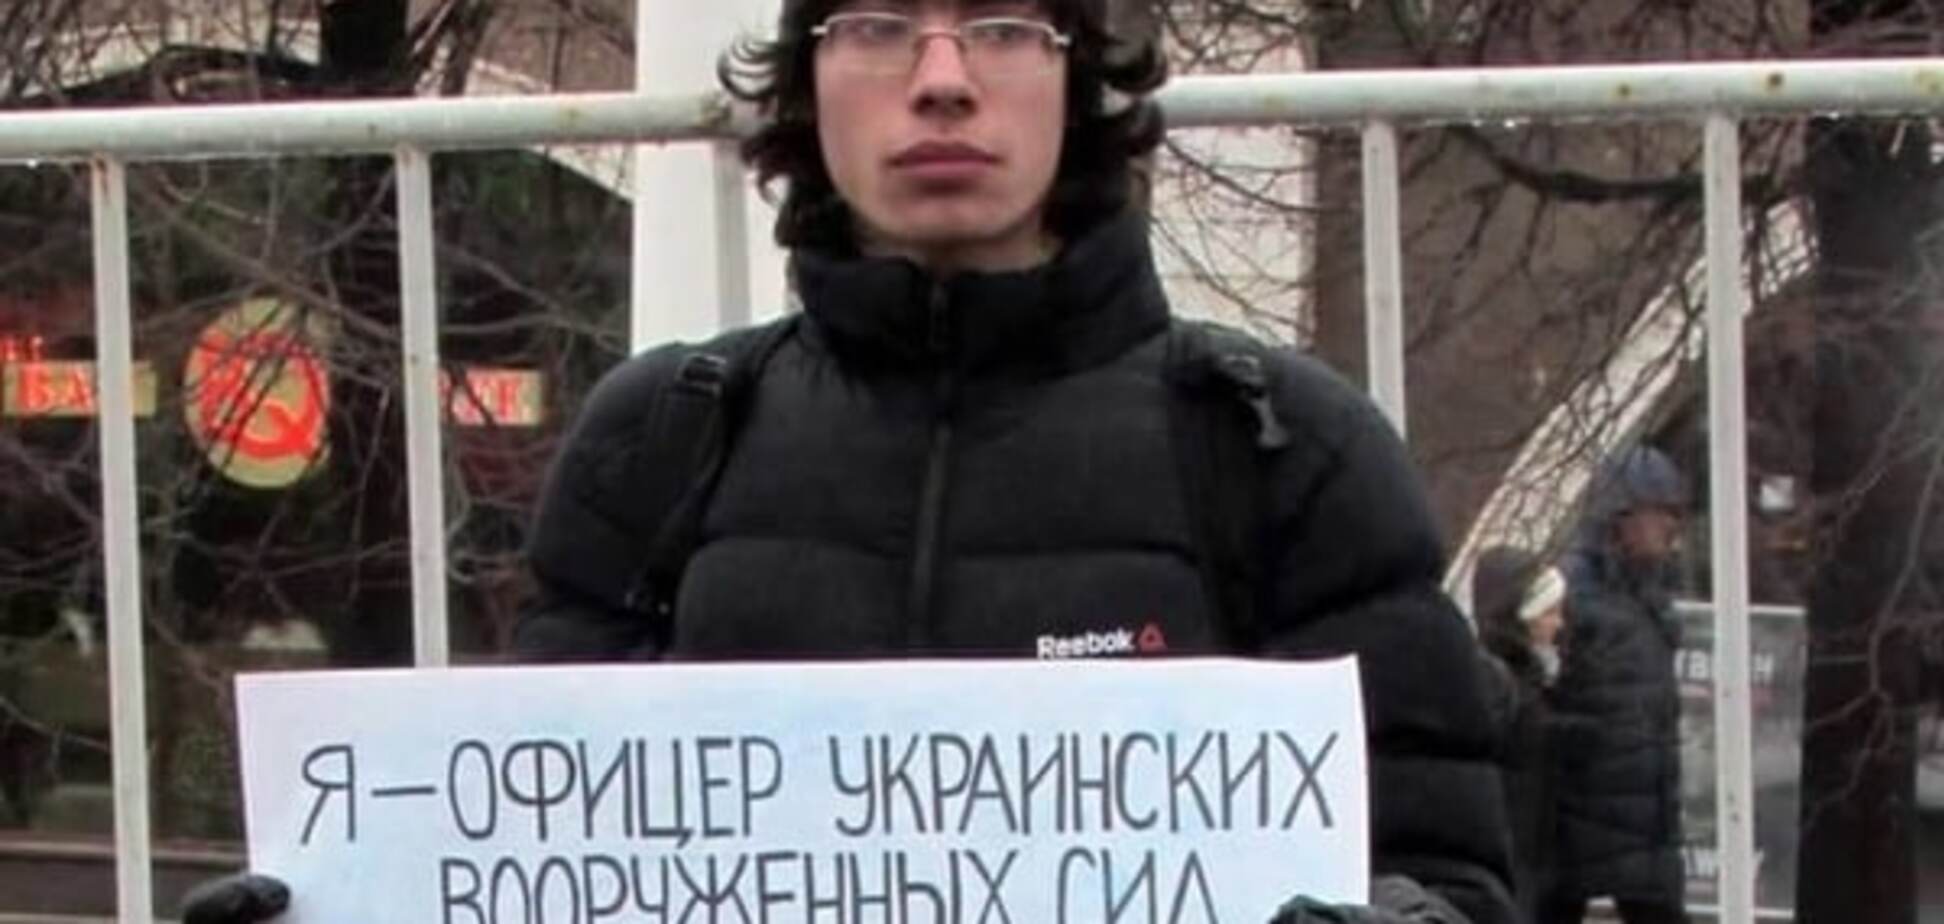 'Бандерівець, пішов на х**': в Москві мати вигнала сина за підтримку Савченко